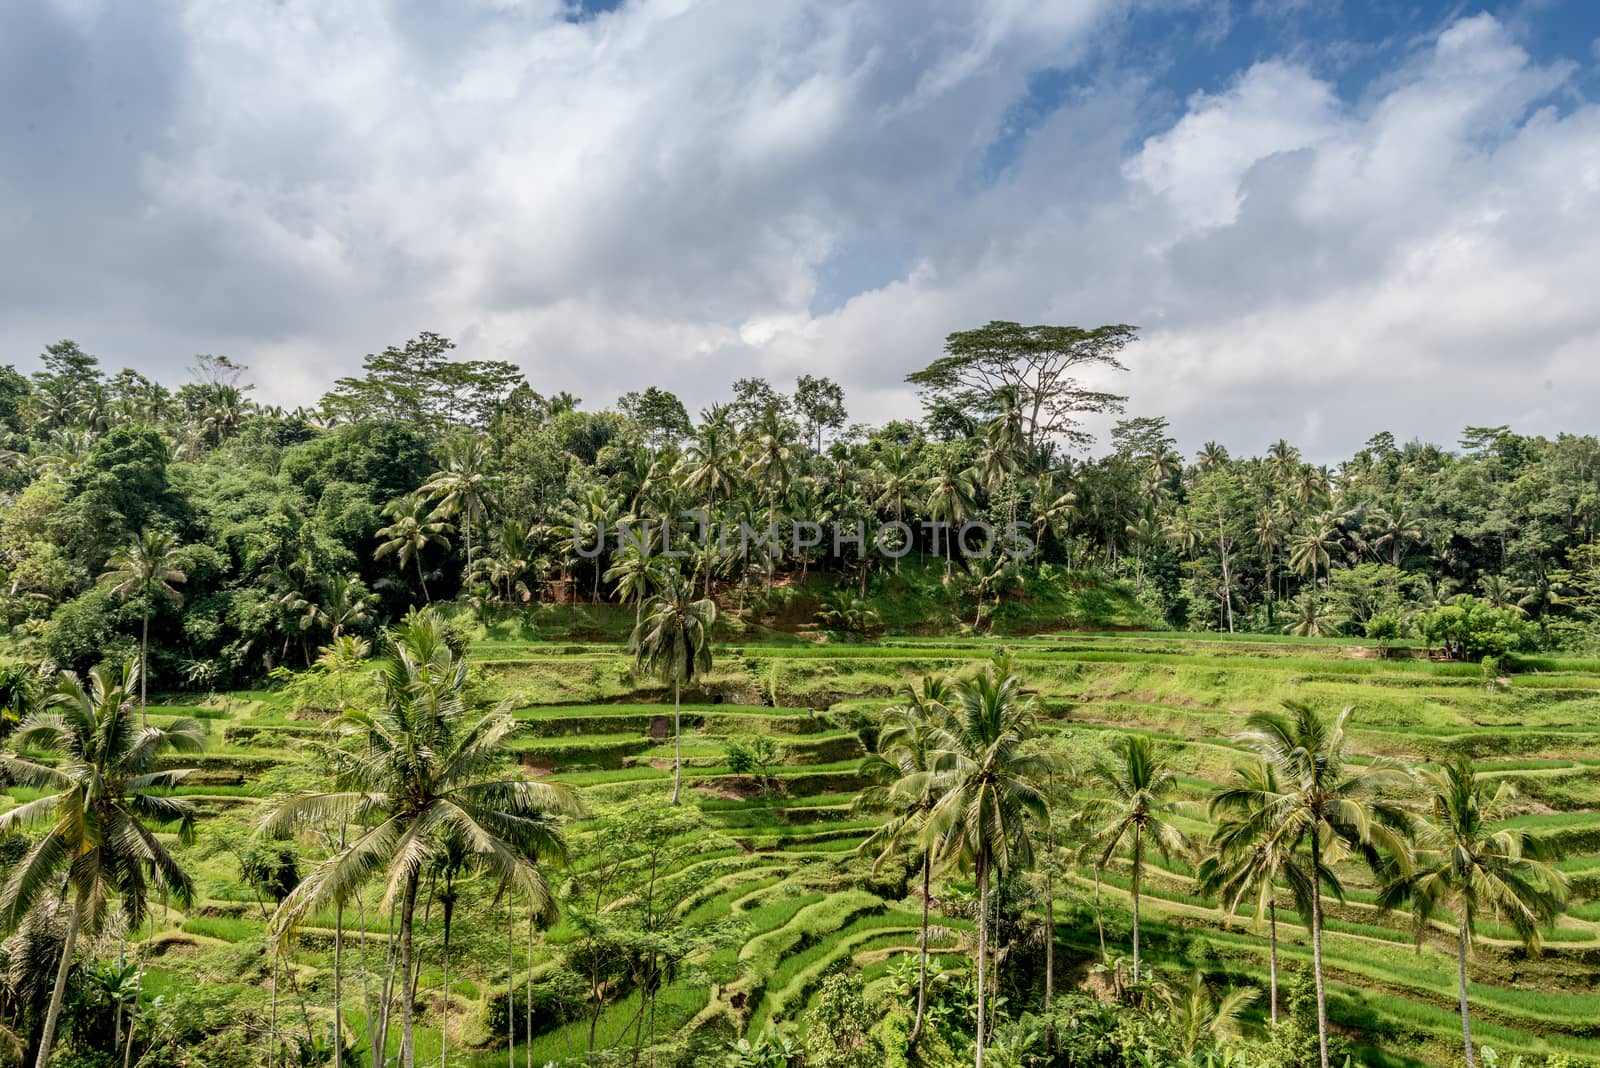 ubud rice paddy fields by pomemick